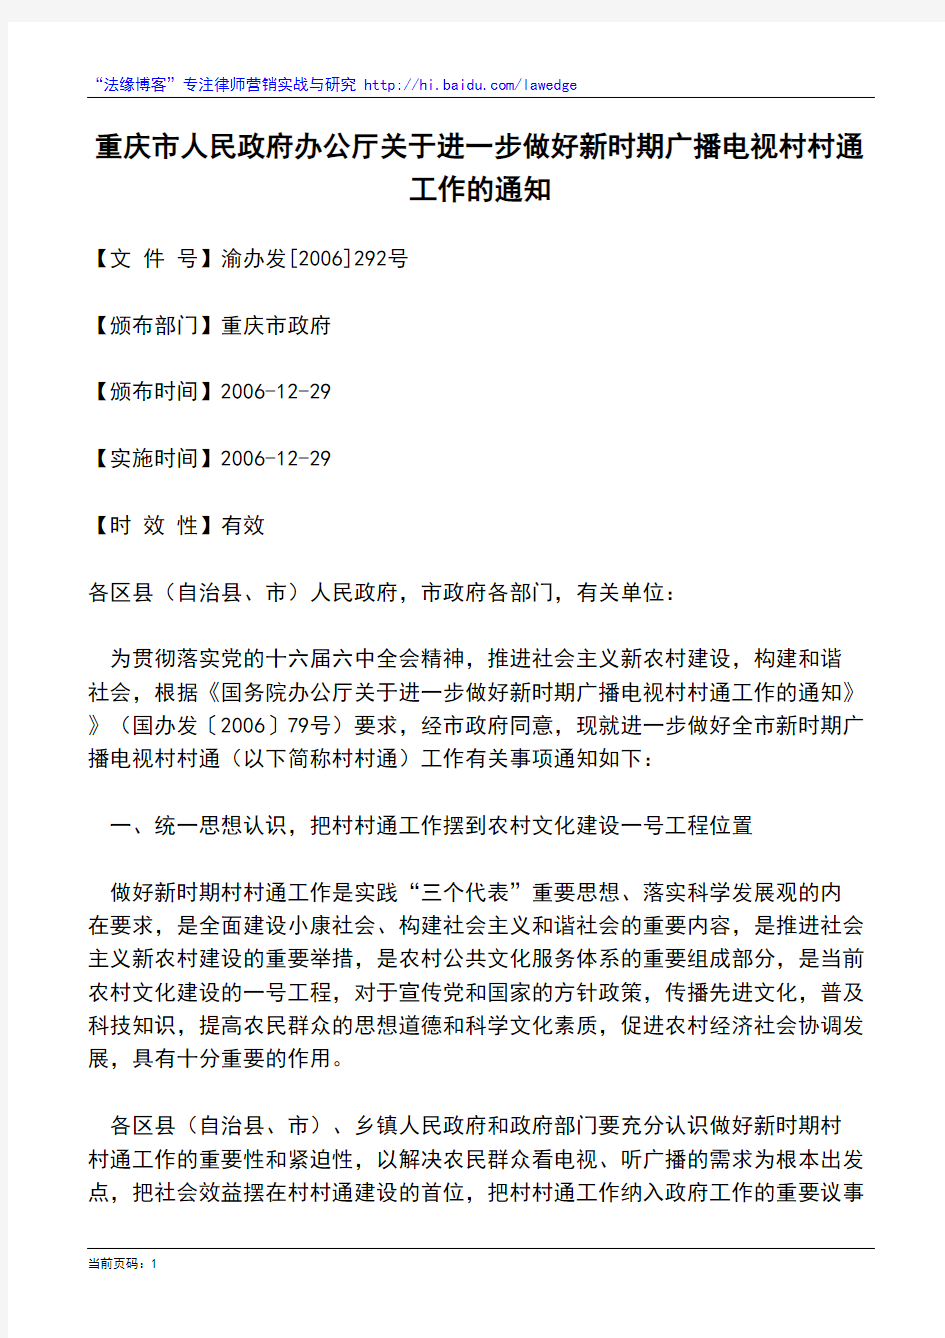 重庆市人民政府办公厅关于进一步做好新时期广播电视村村通工作的通知